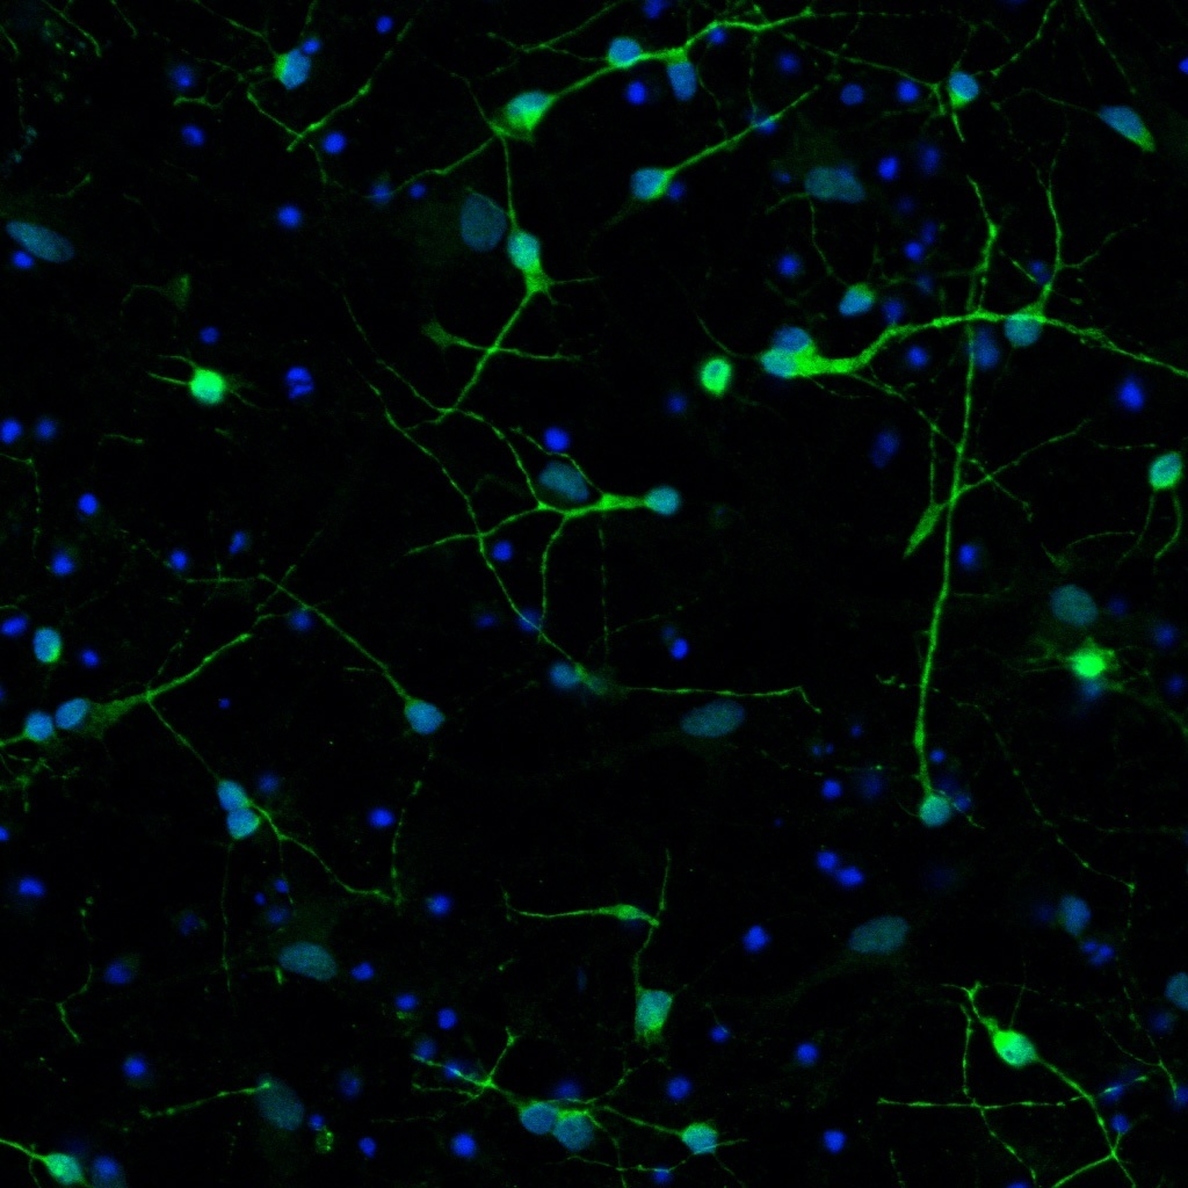 Señales neuronales rotas conducen a la neurogedeneración